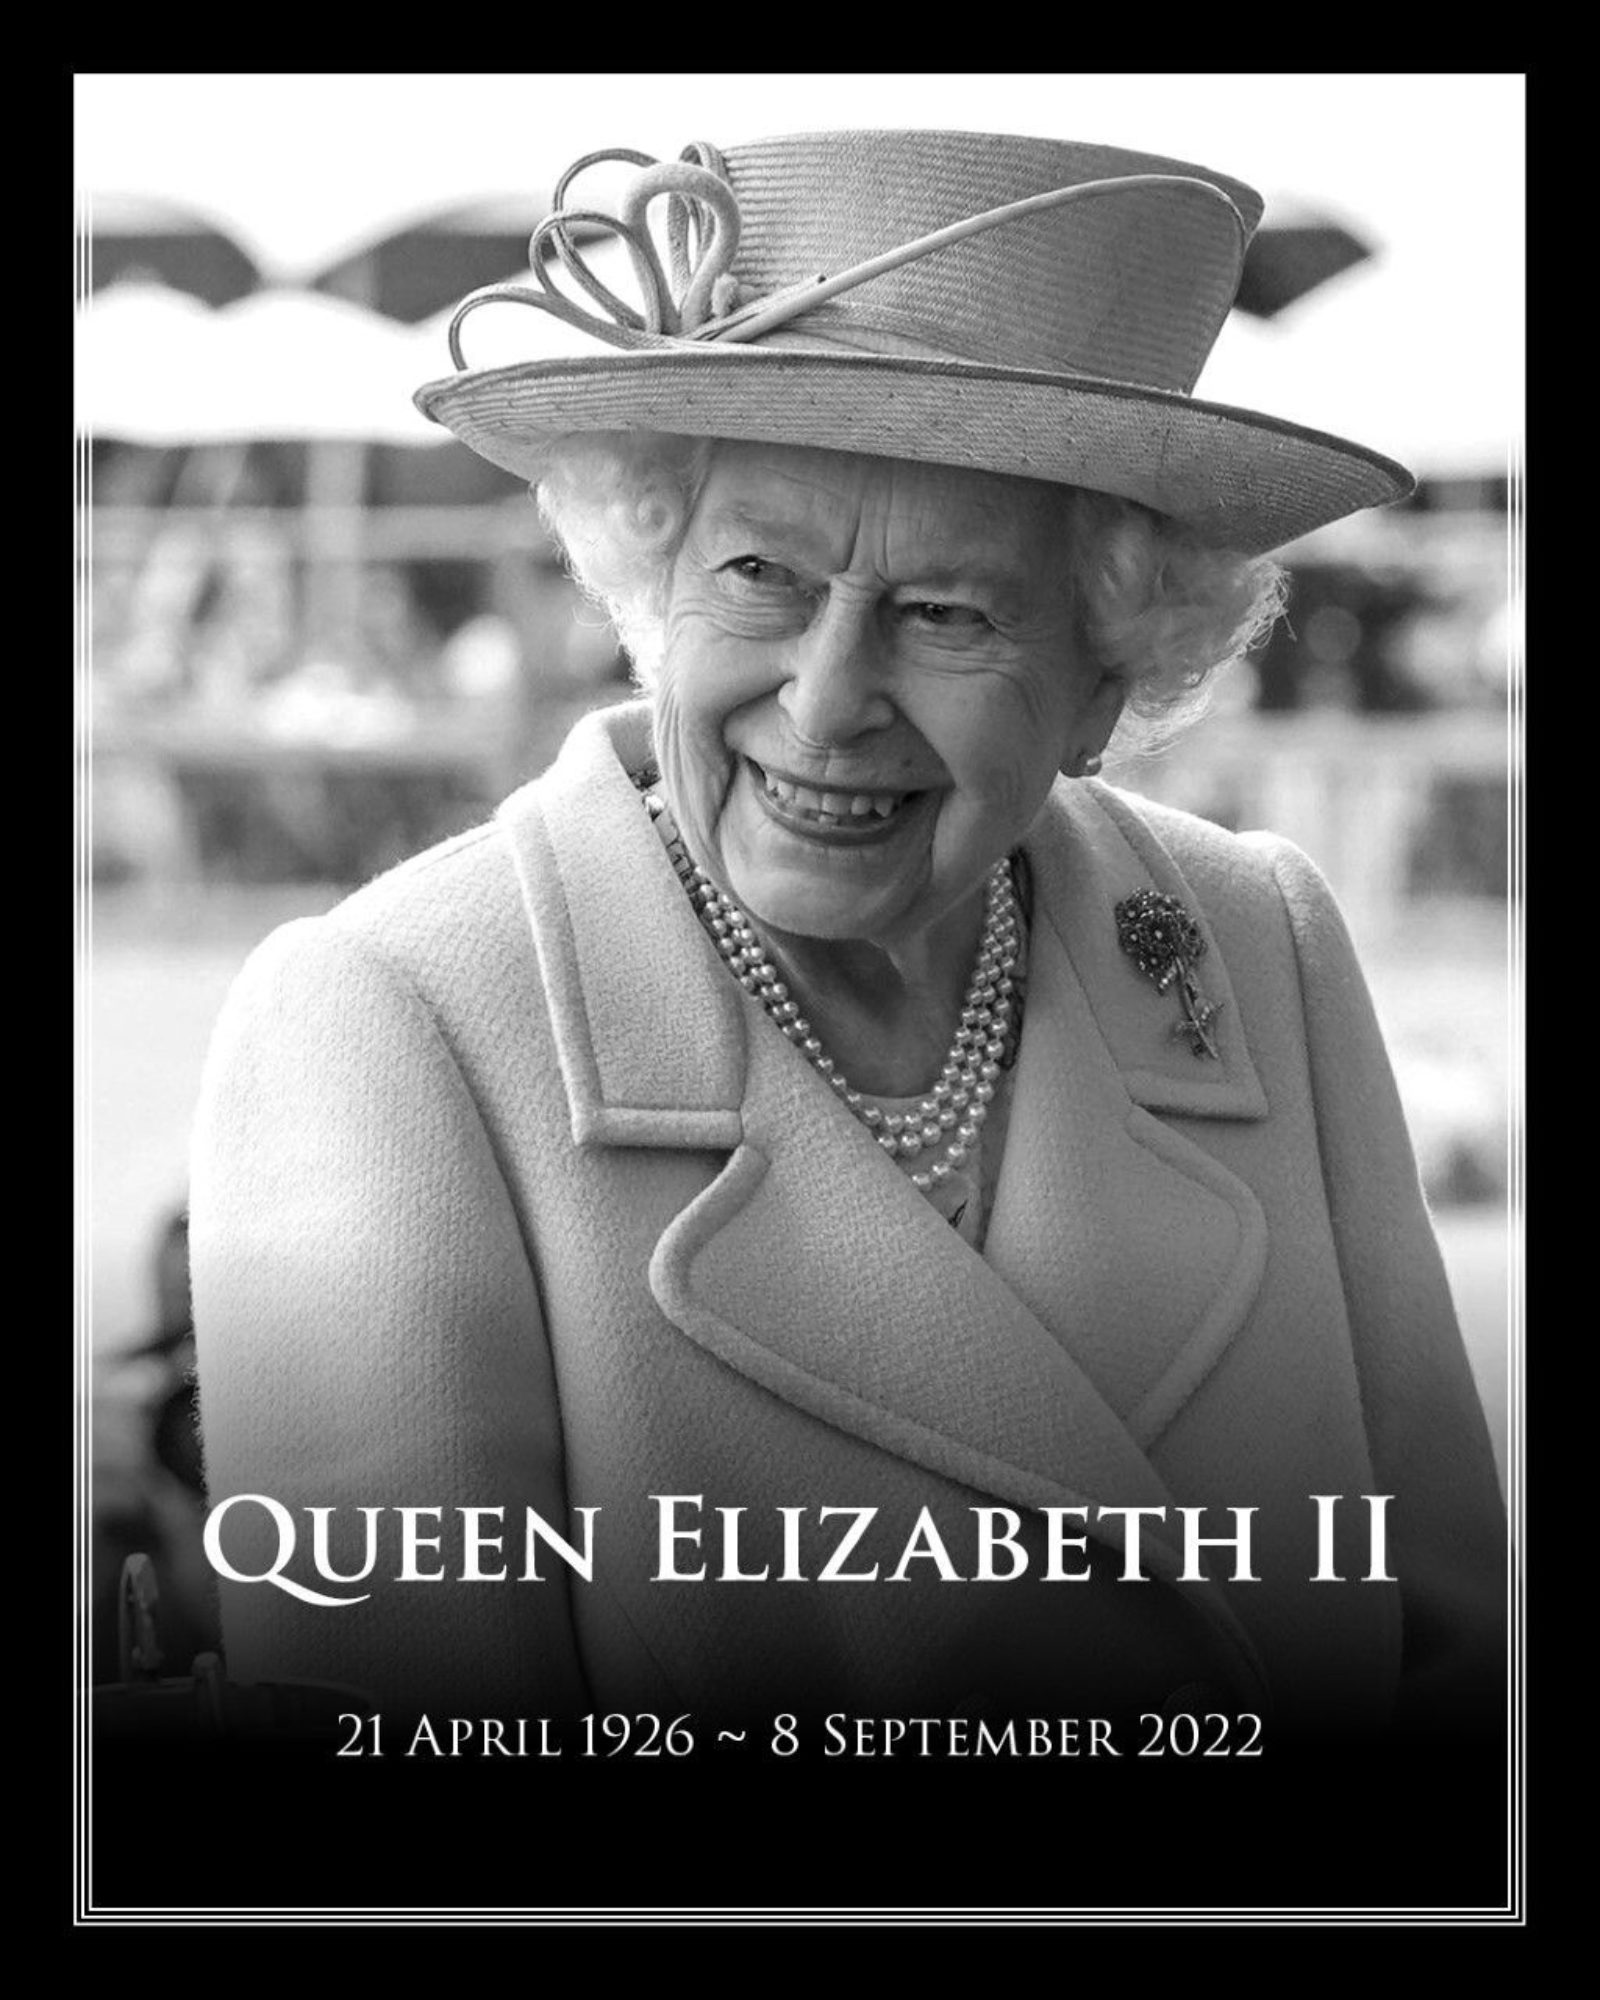 Image of Her Majesty, Queen Elizabeth II